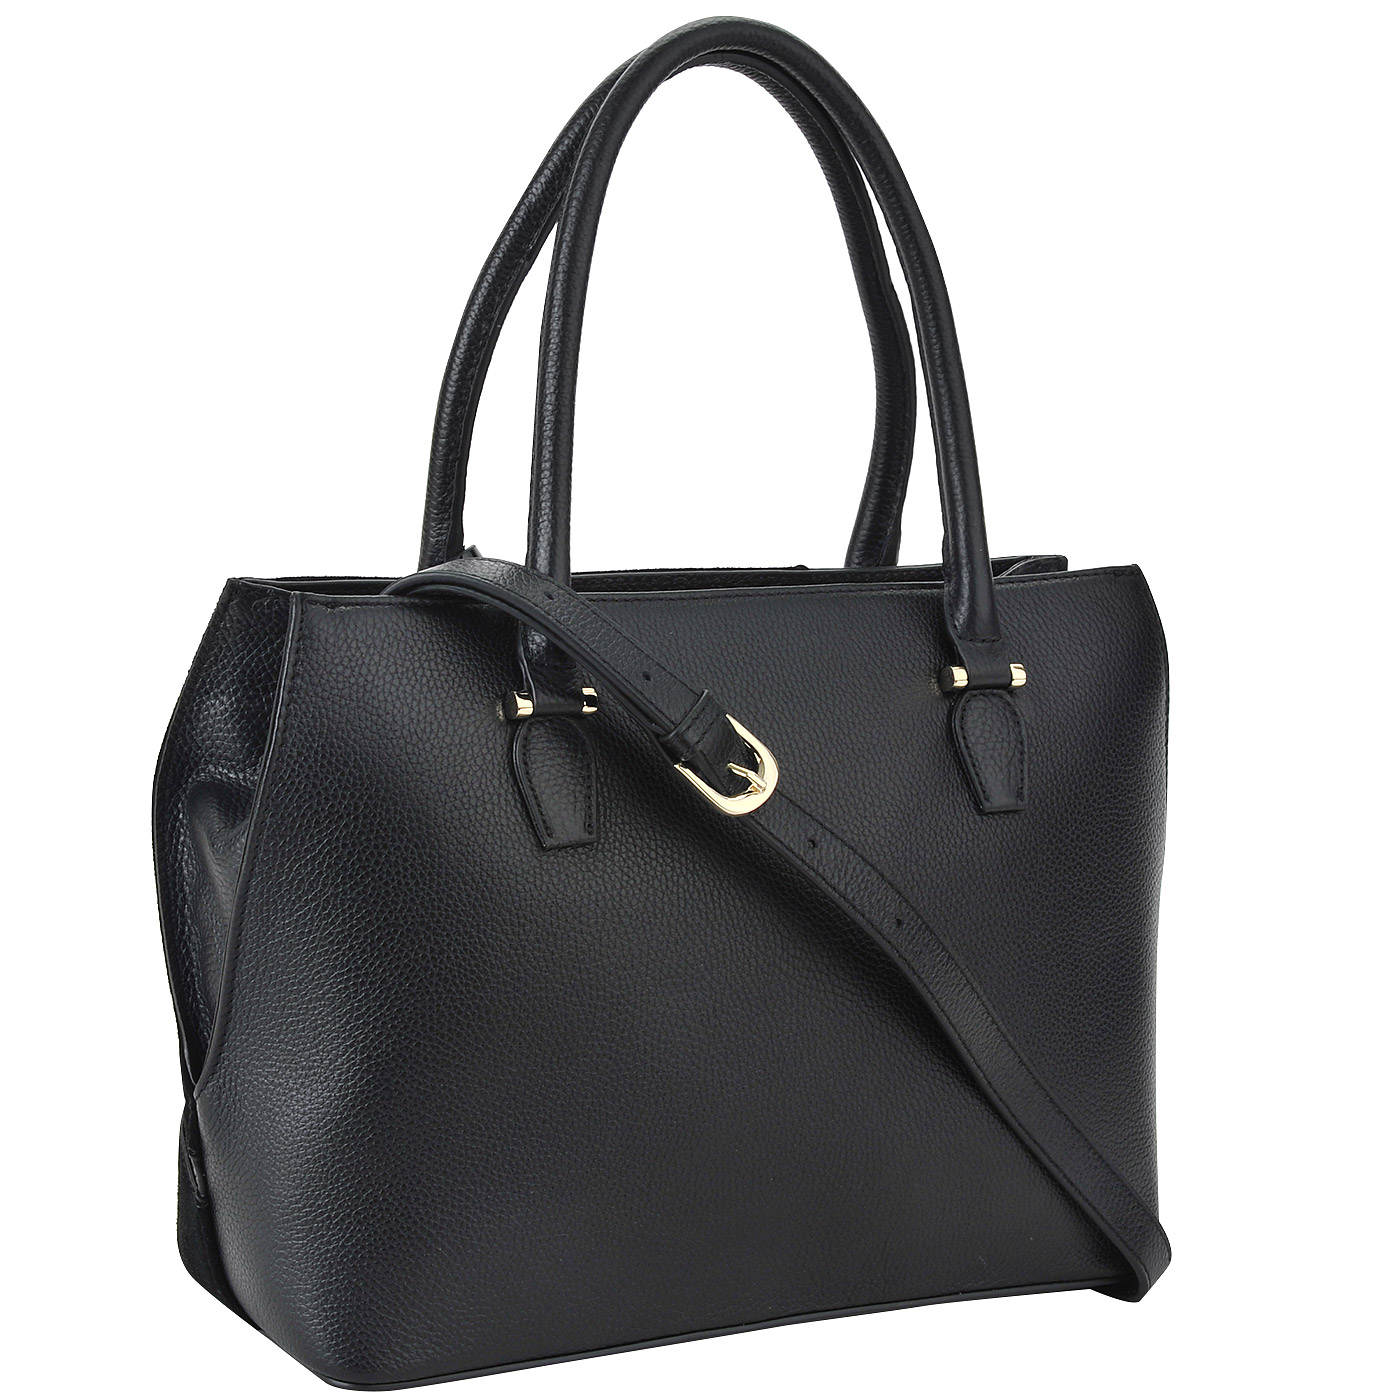 Черная кожаная сумка с декоративной аппликацией Fiato Dream 